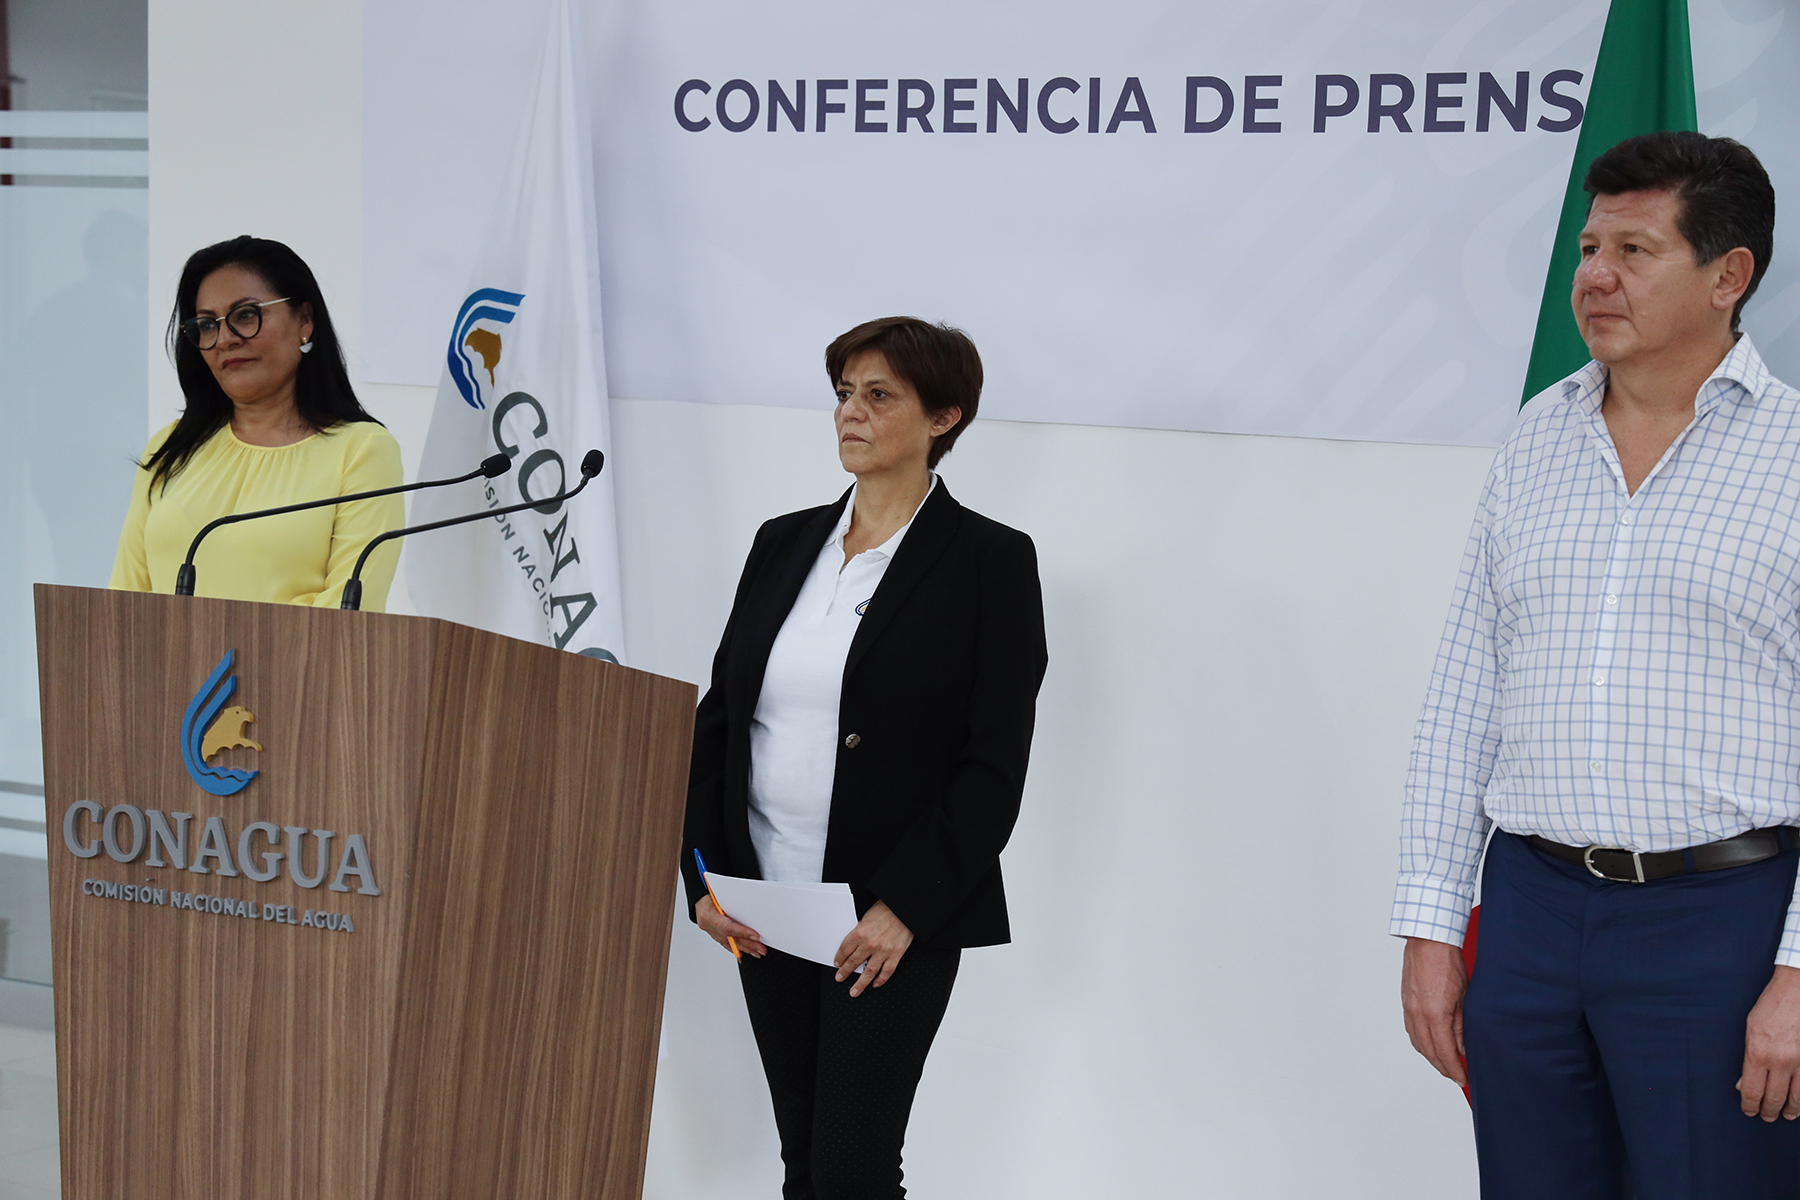 En videoconferencia de prensa, se detallaron las acciones de Conagua, coordinadas con ANEAS y dependencias federales, durante la contingencia sanitaria.